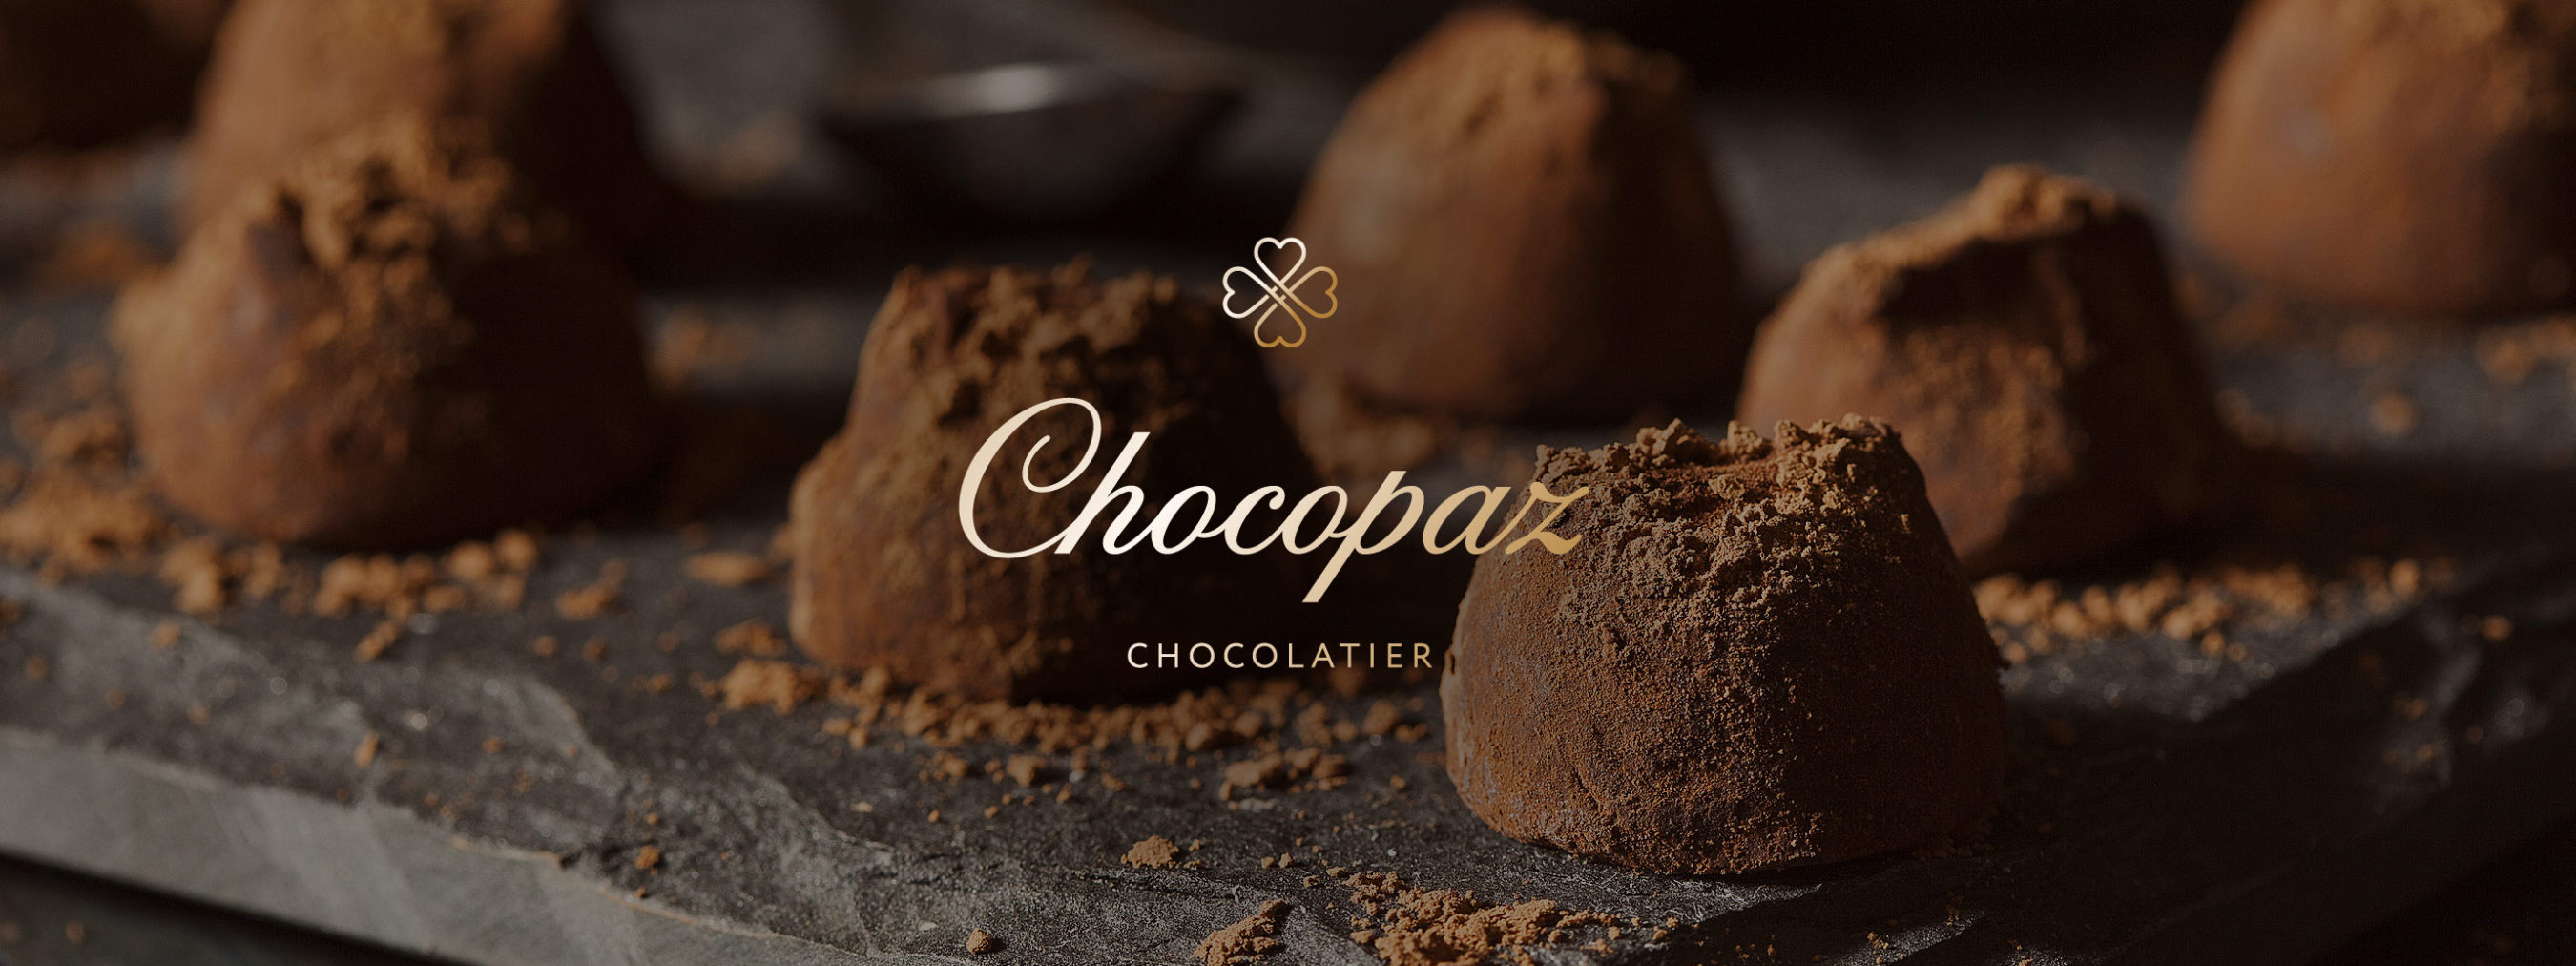 Брендинг шоколада Chocopaz